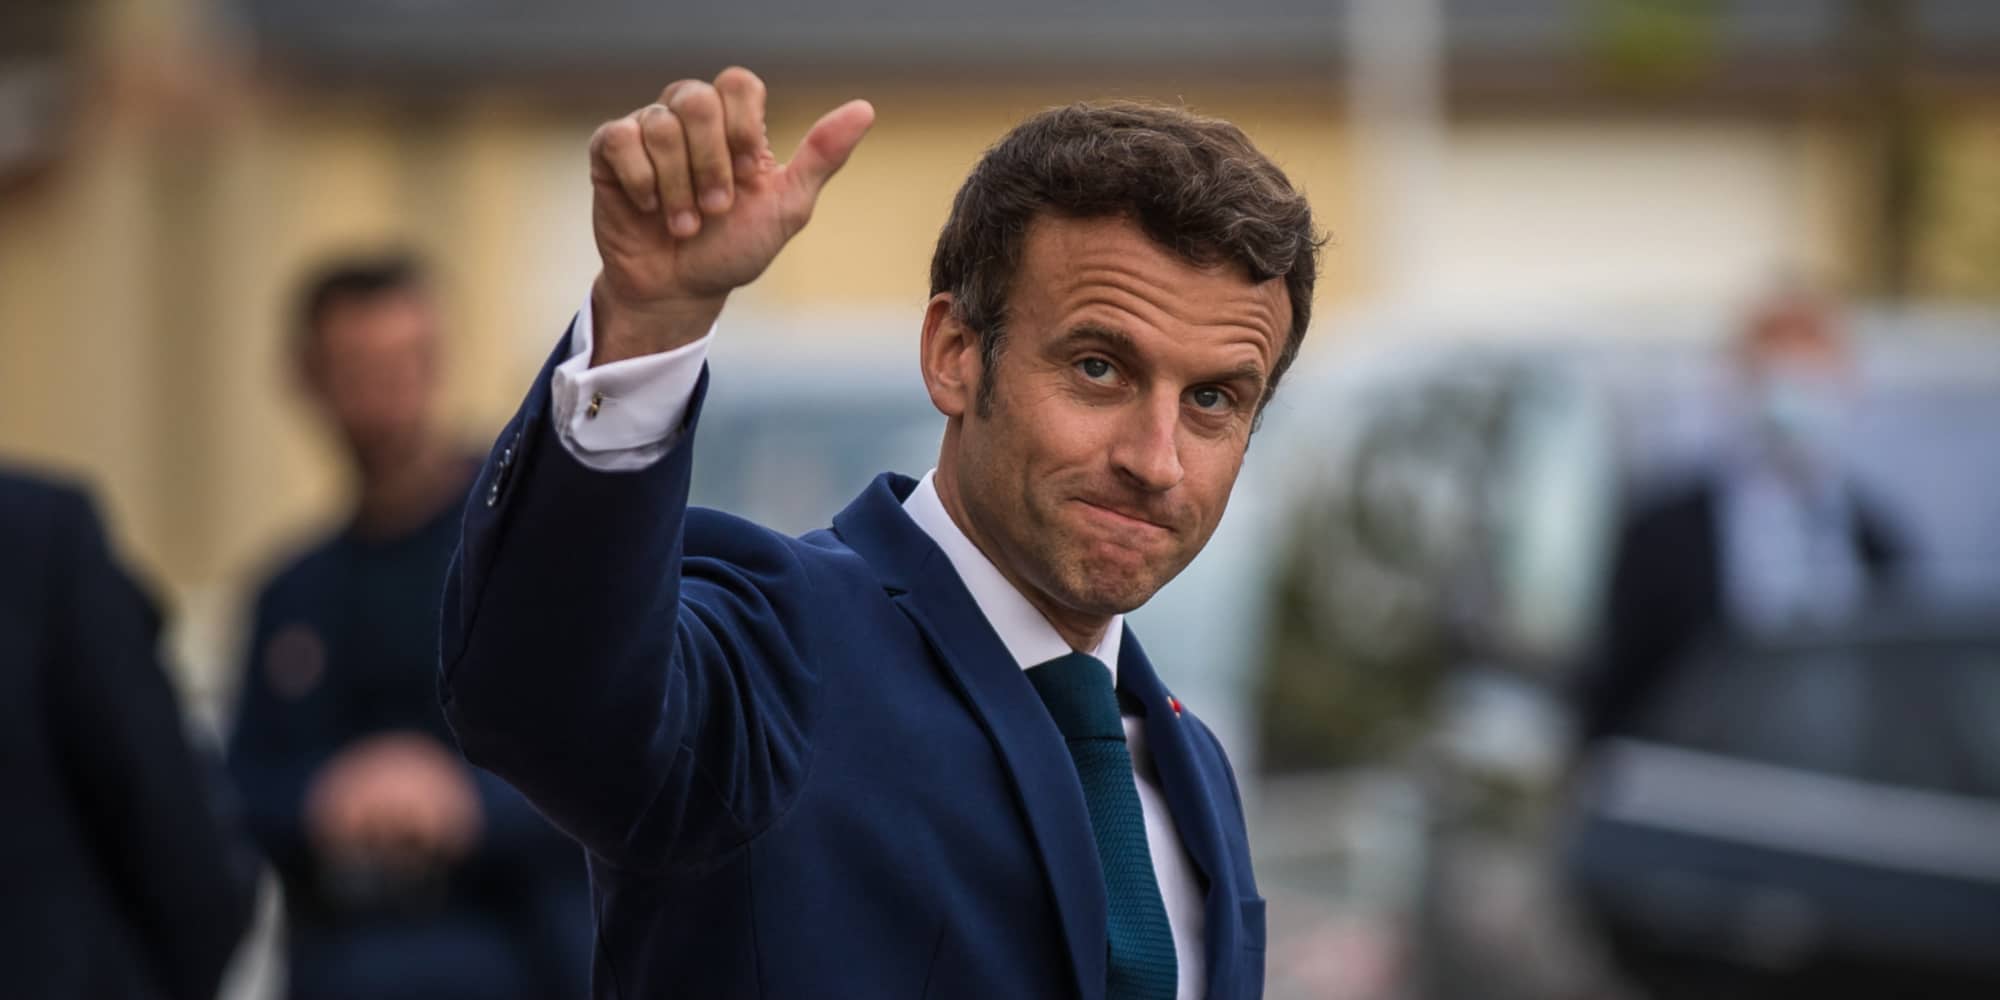 Cinq questions sur la rémunération du banquier Emmanuel Macron